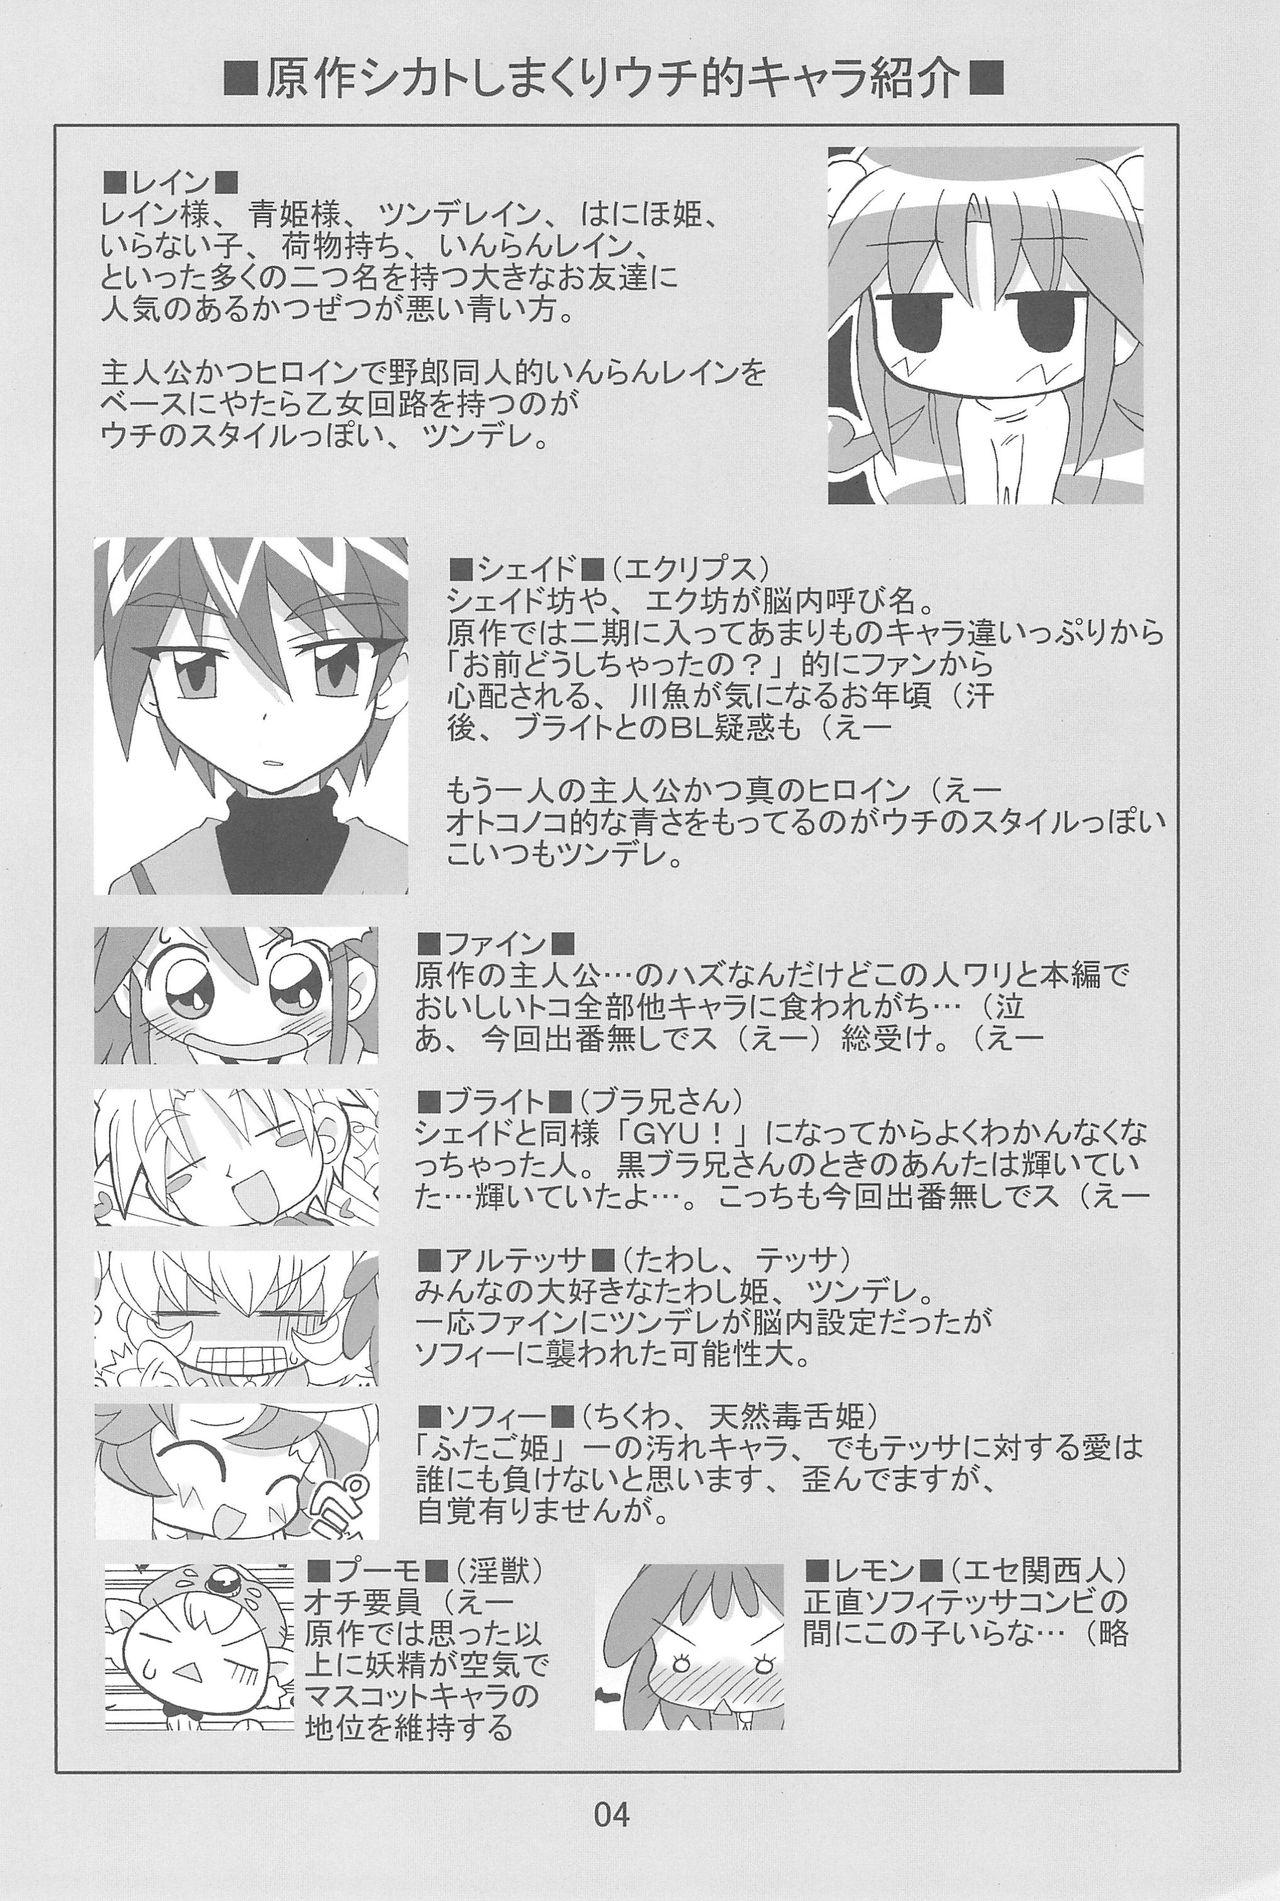 Corrida Strawberry x Strawberry - Fushigiboshi no futagohime Roleplay - Page 4